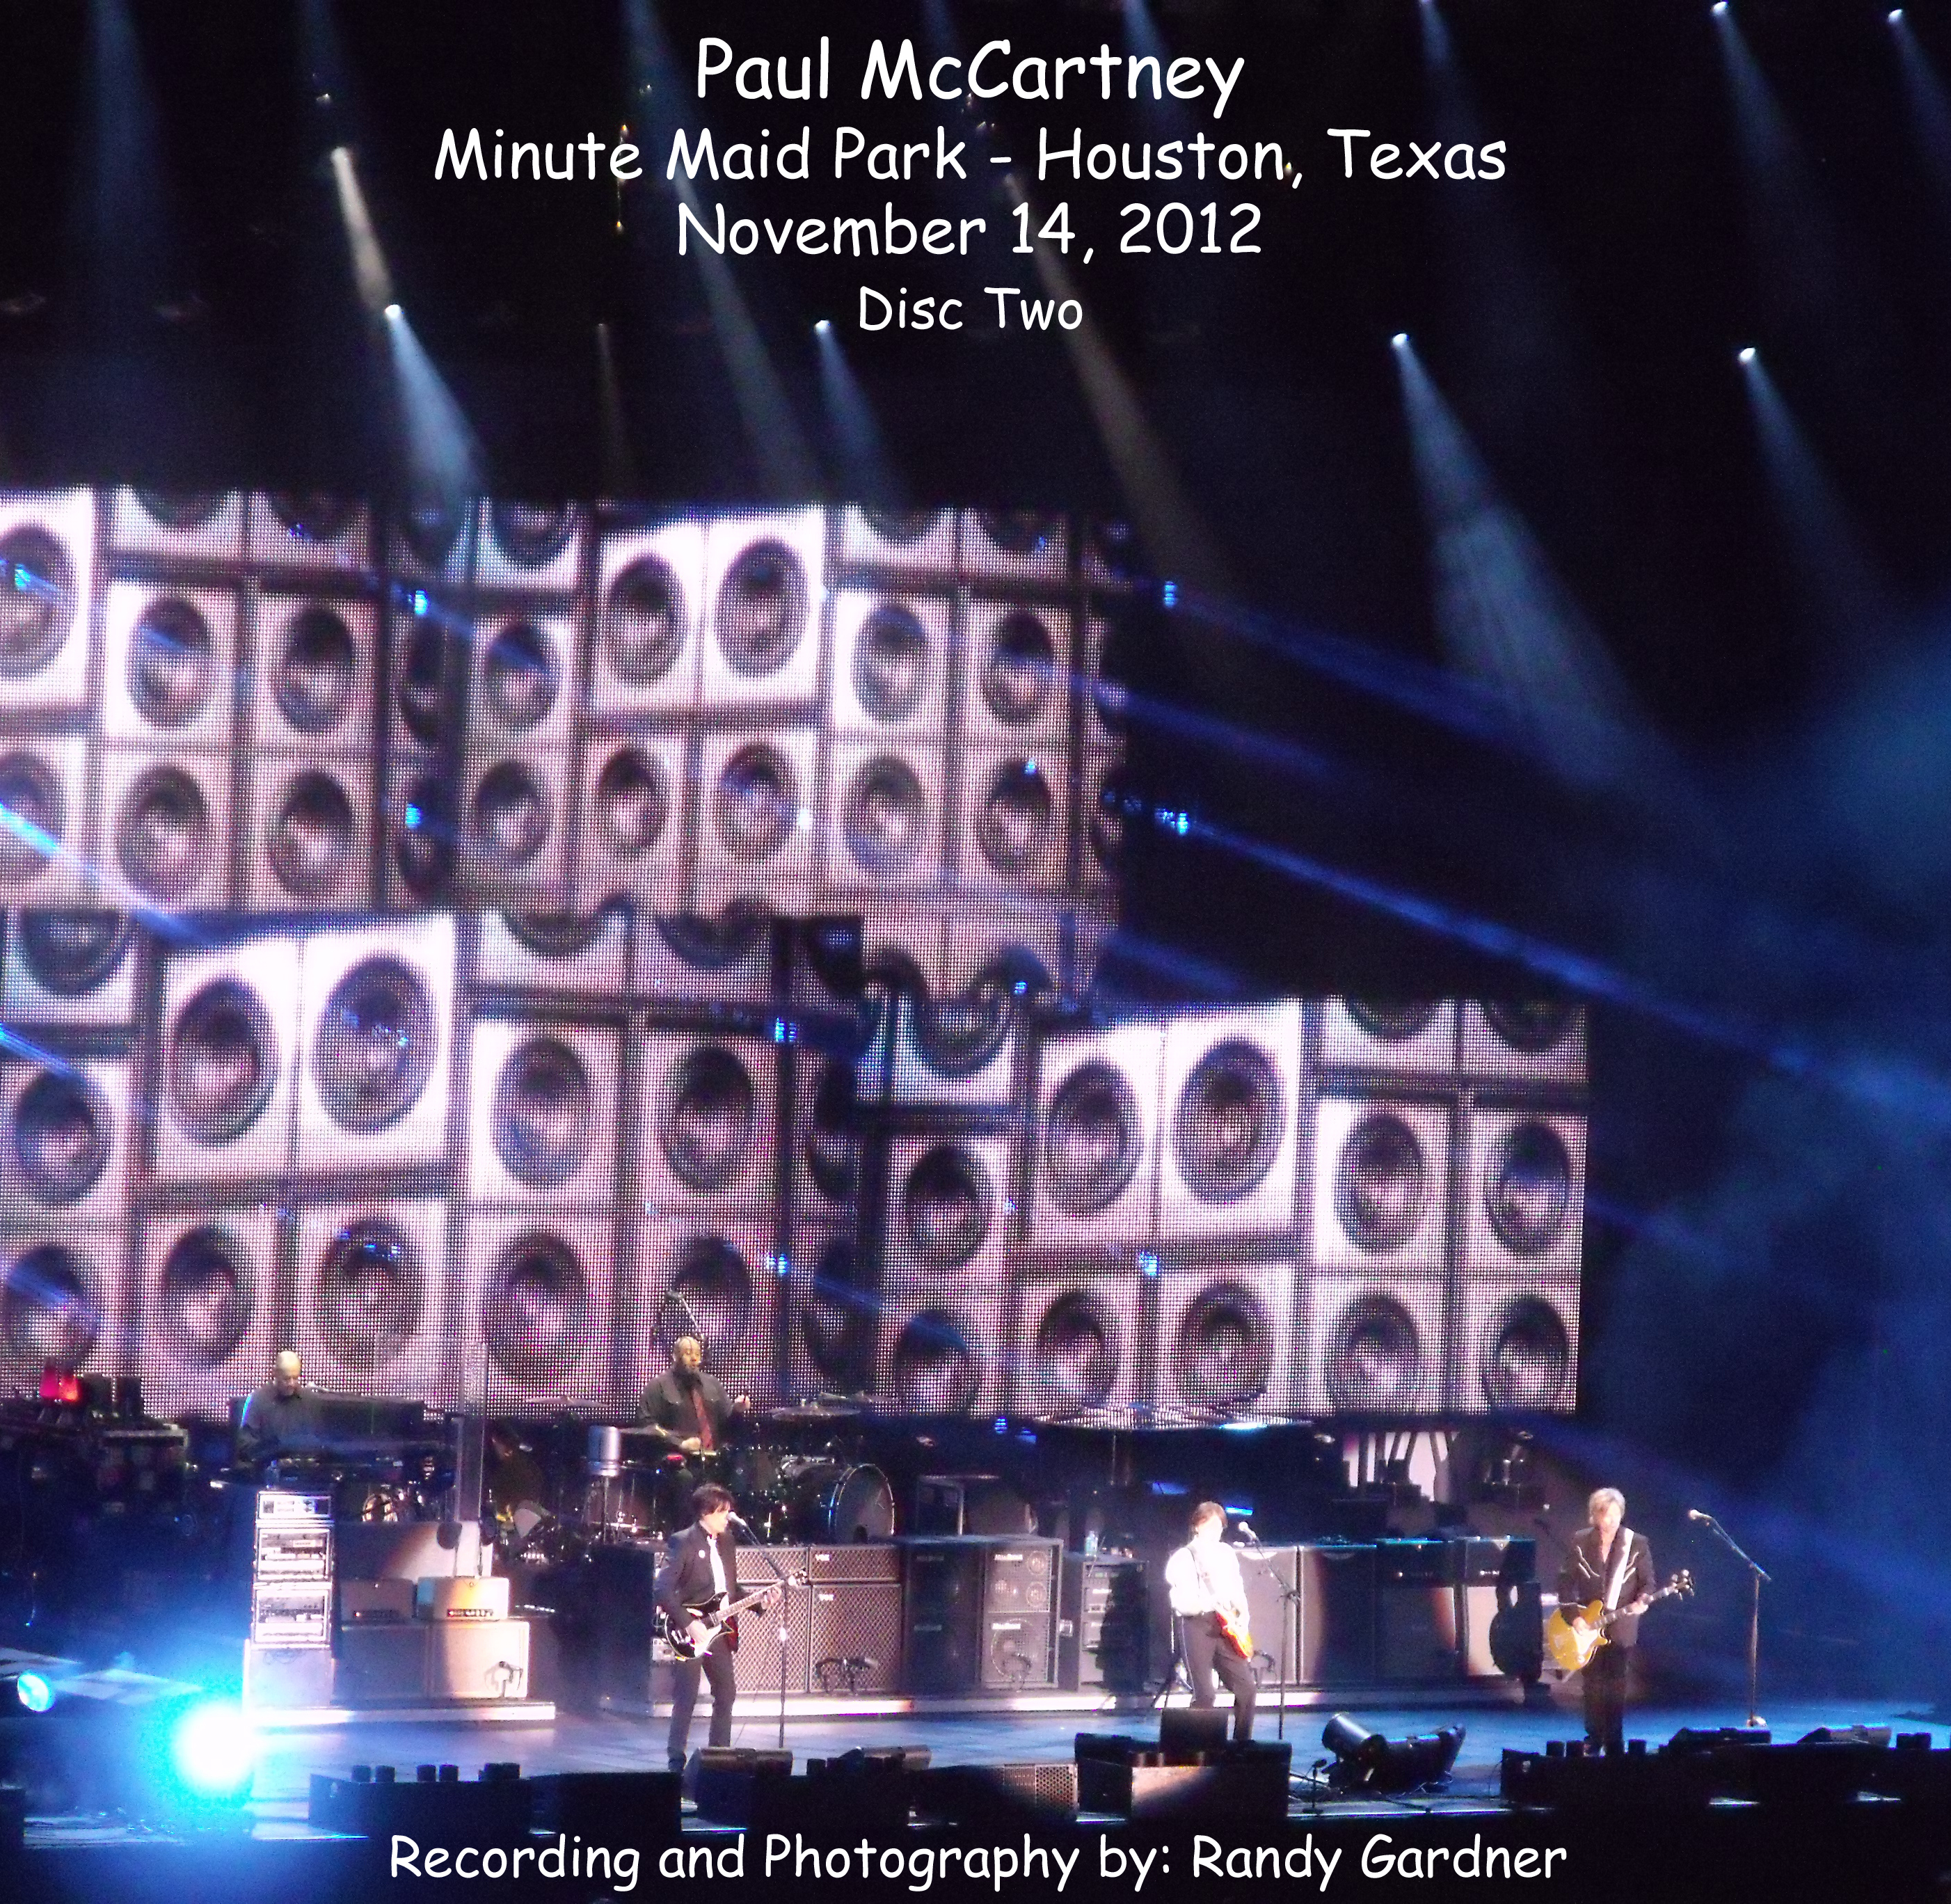 PaulMcCartney2012-11-14AParkInHoustonTX (5).jpg